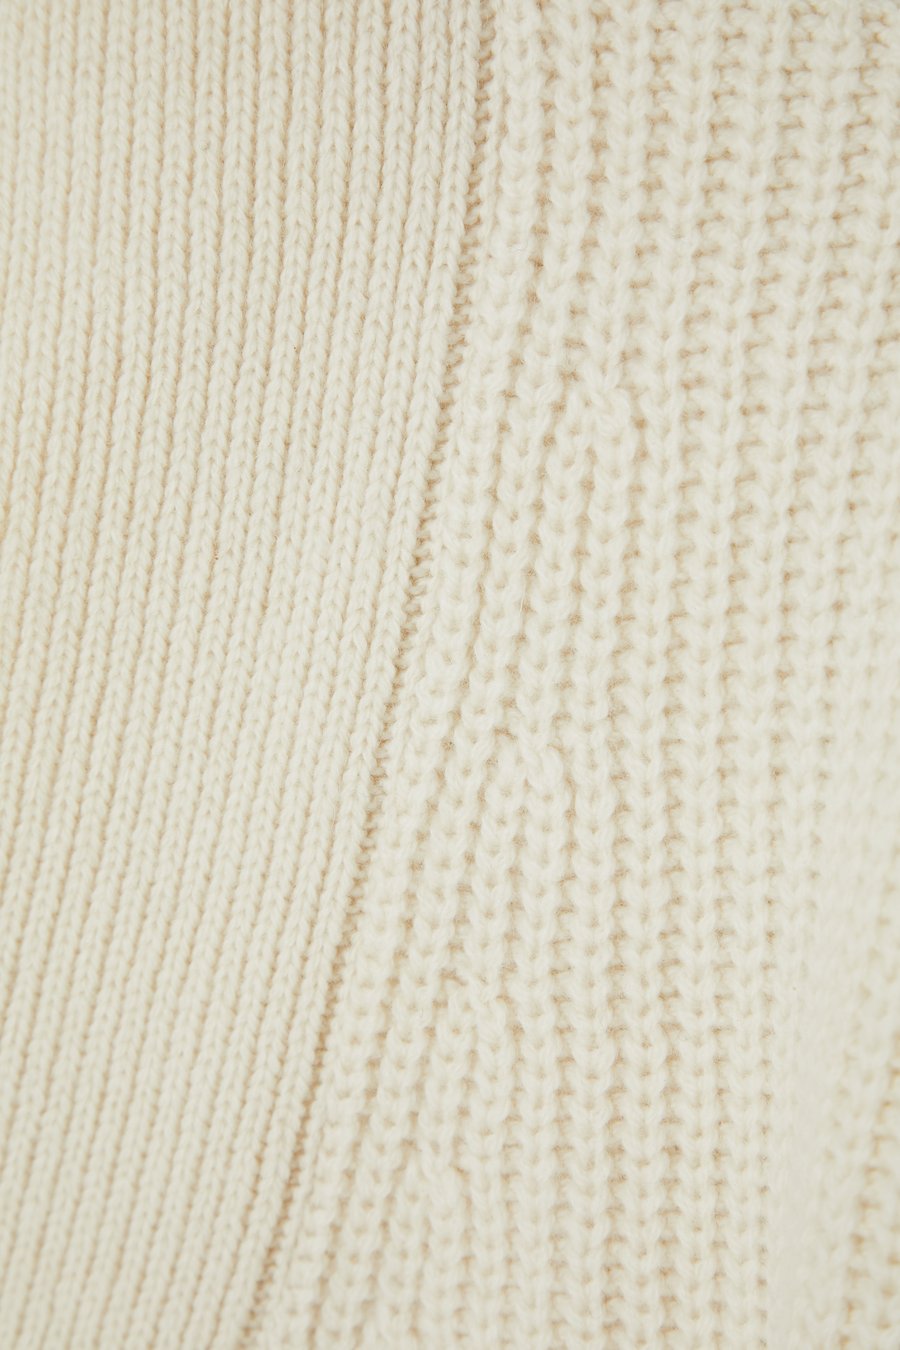 Moussy Denim - MV Short Knit Cardigan in Off White